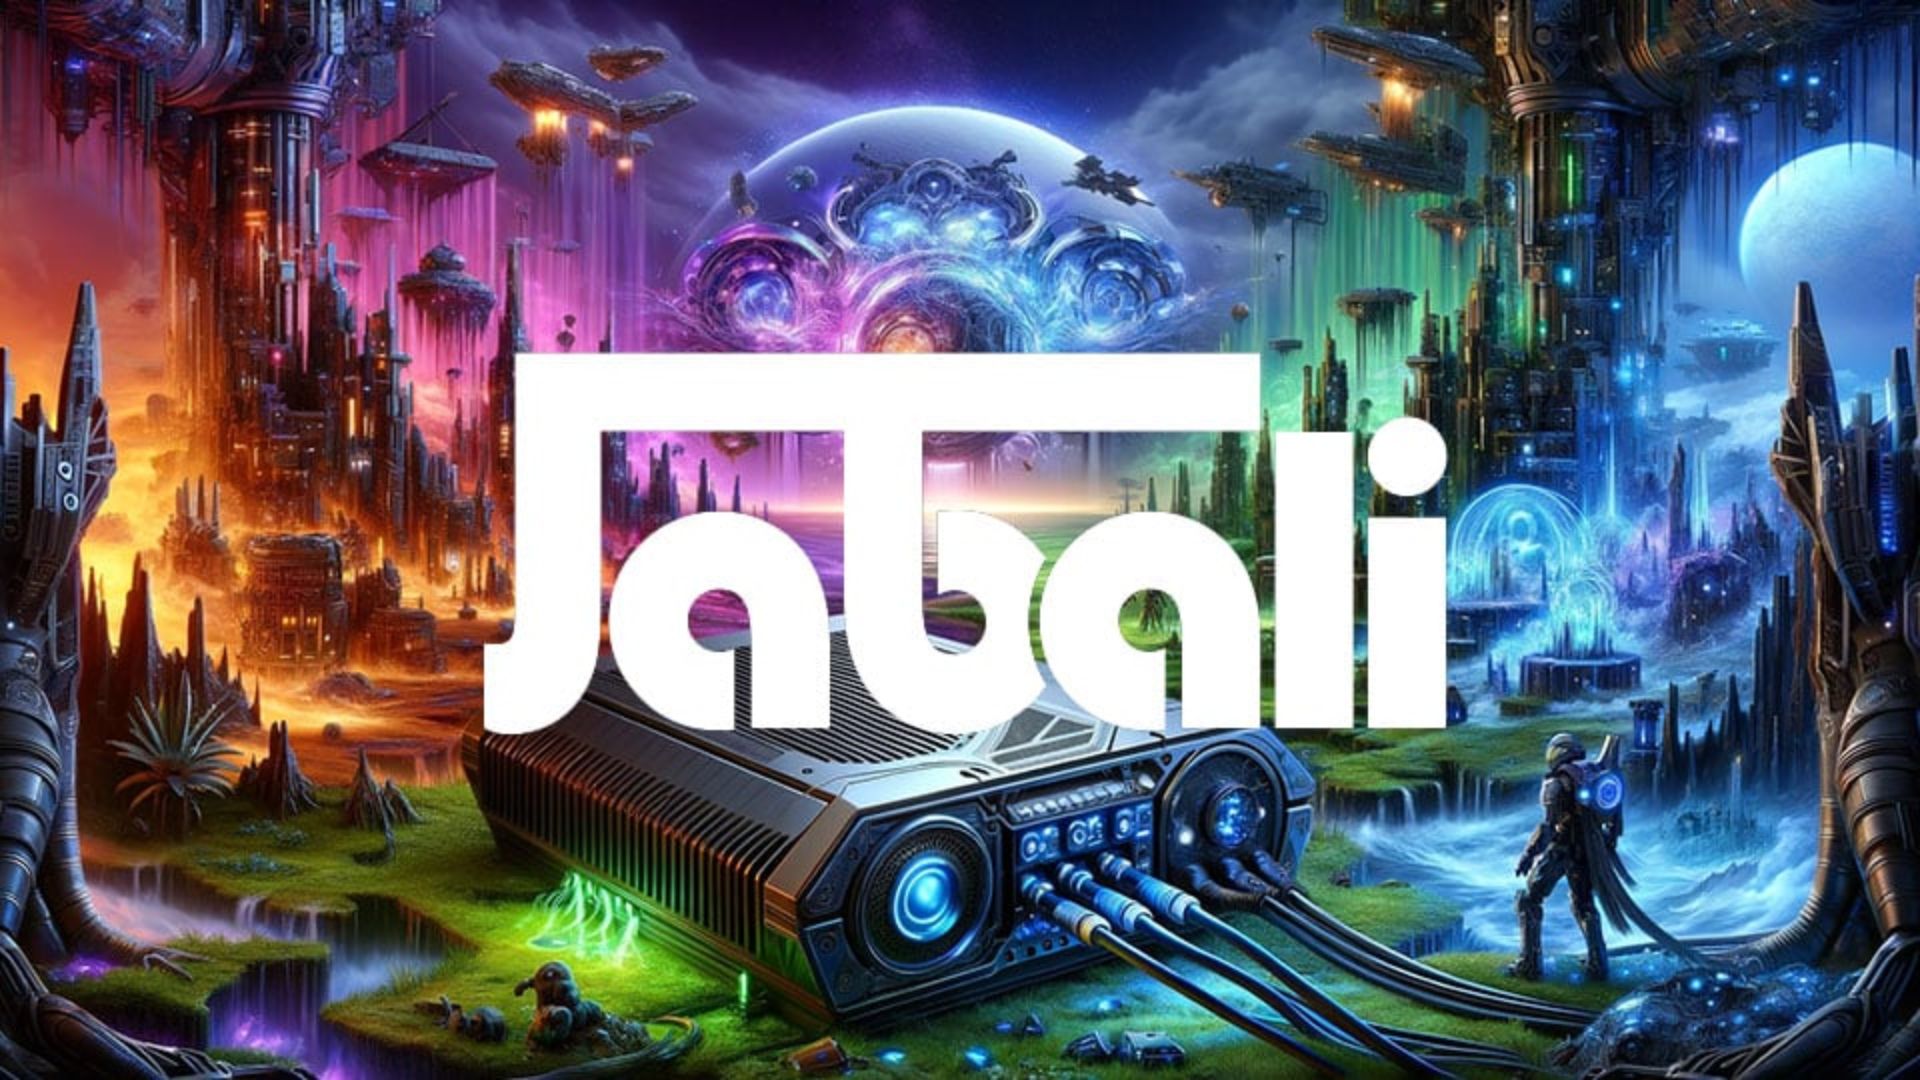 Jabali Raises $5M for Revolutionary AI Game Engine Development